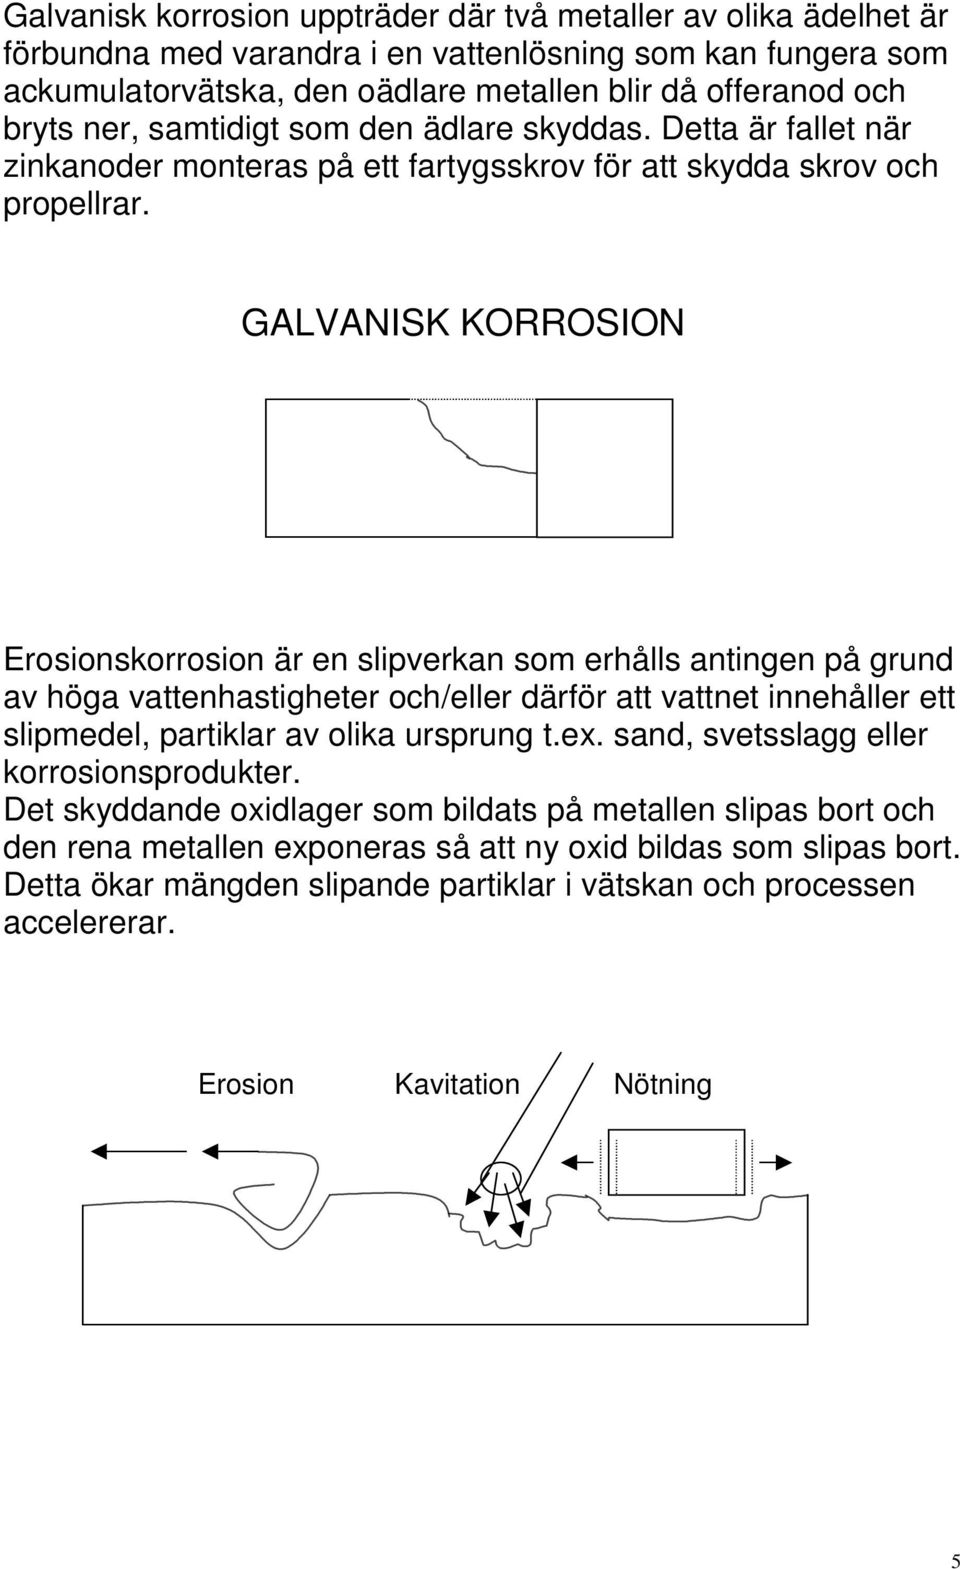 GALVANISK KORROSION Erosionskorrosion är en slipverkan som erhålls antingen på grund av höga vattenhastigheter och/eller därför att vattnet innehåller ett slipmedel, partiklar av olika ursprung t.ex.